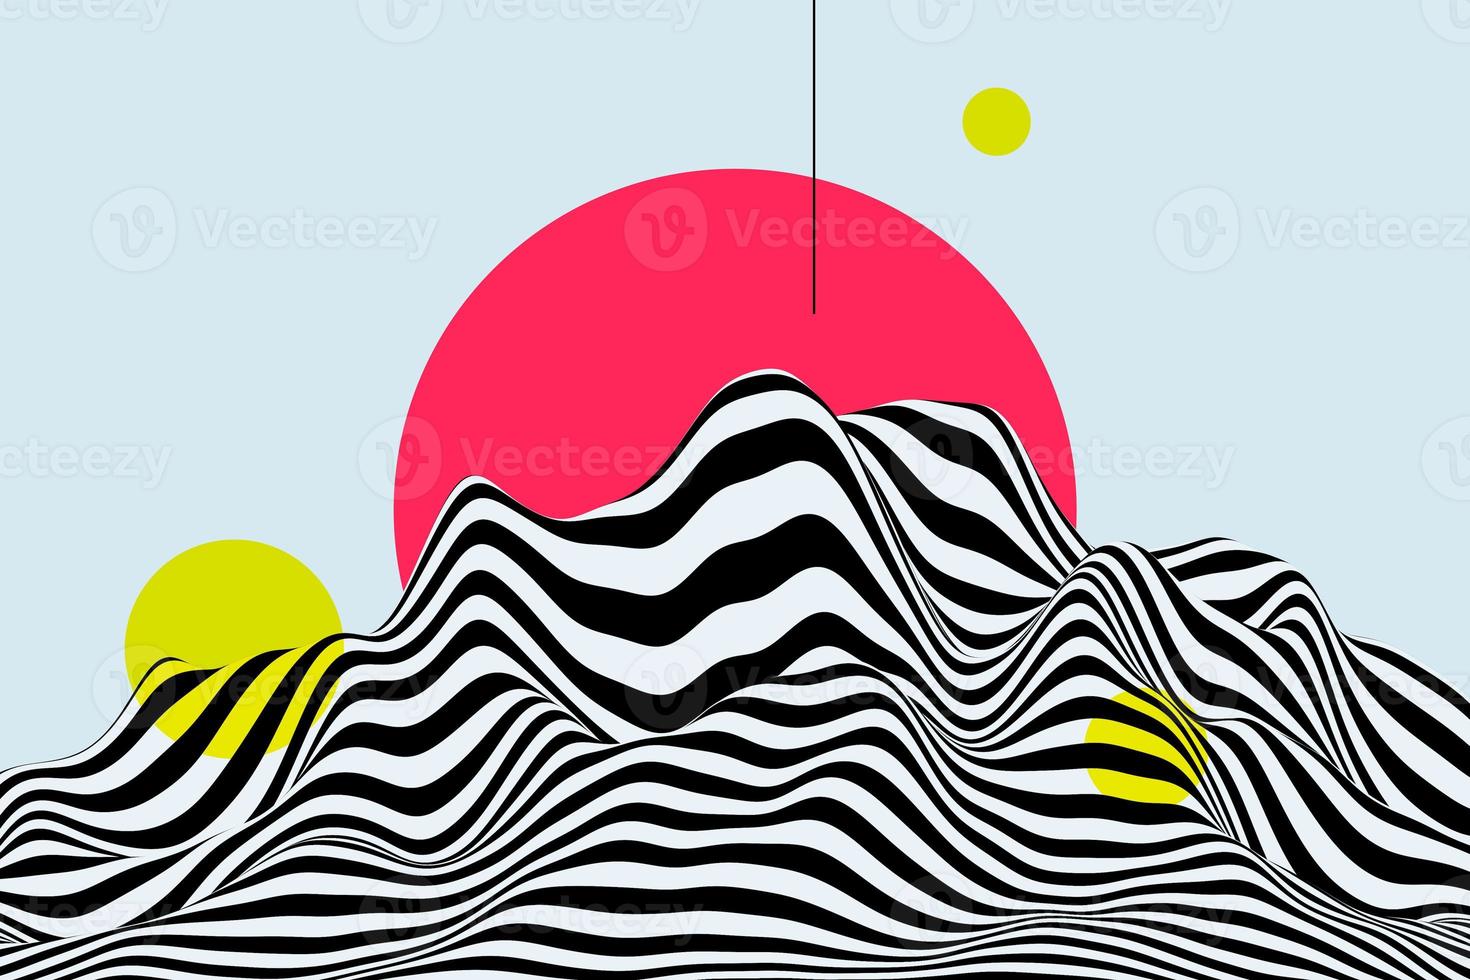 svart och vit våg 3d bakgrund. snygg dynamisk randig bergsyta. abstrakt smidig virvelmönster textur med rosa sol och gul cirkel bokef effekt foto